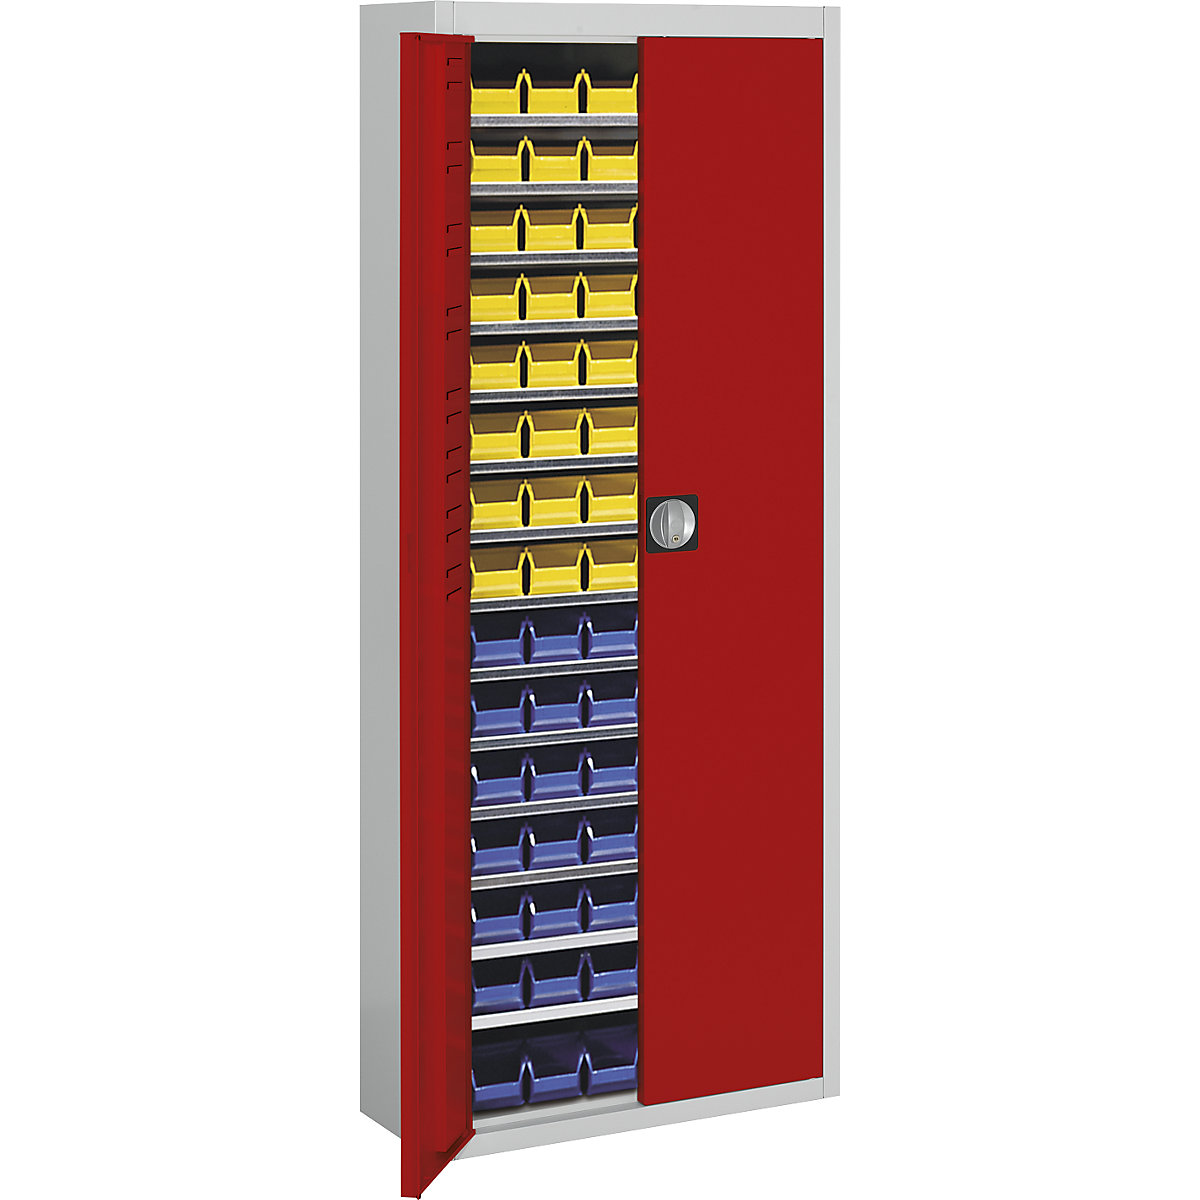 Skladišni ormar s otvorenim skladišnim kutijama – mauser, VxŠxD 1740 x 680 x 280 mm, u dvije boje, korpus u sivoj boji, vrata u crnoj boji, 90 kutija-5